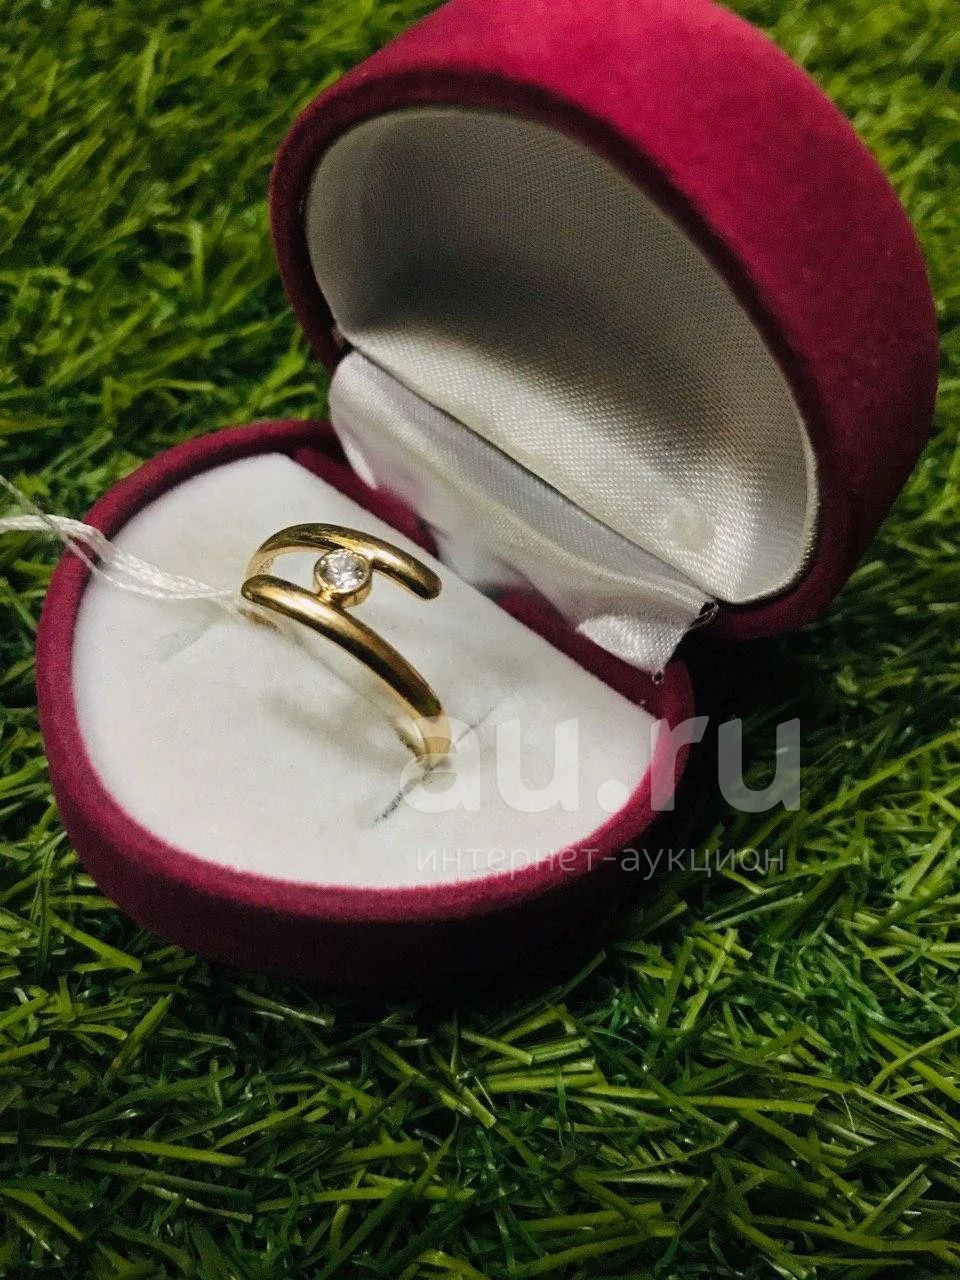 Золотое кольцо 2,3 грамма 585пр (206) — купить в Красноярске. Состояние: Б/у. Кольца, перстни на интернет-аукционе Au.ru